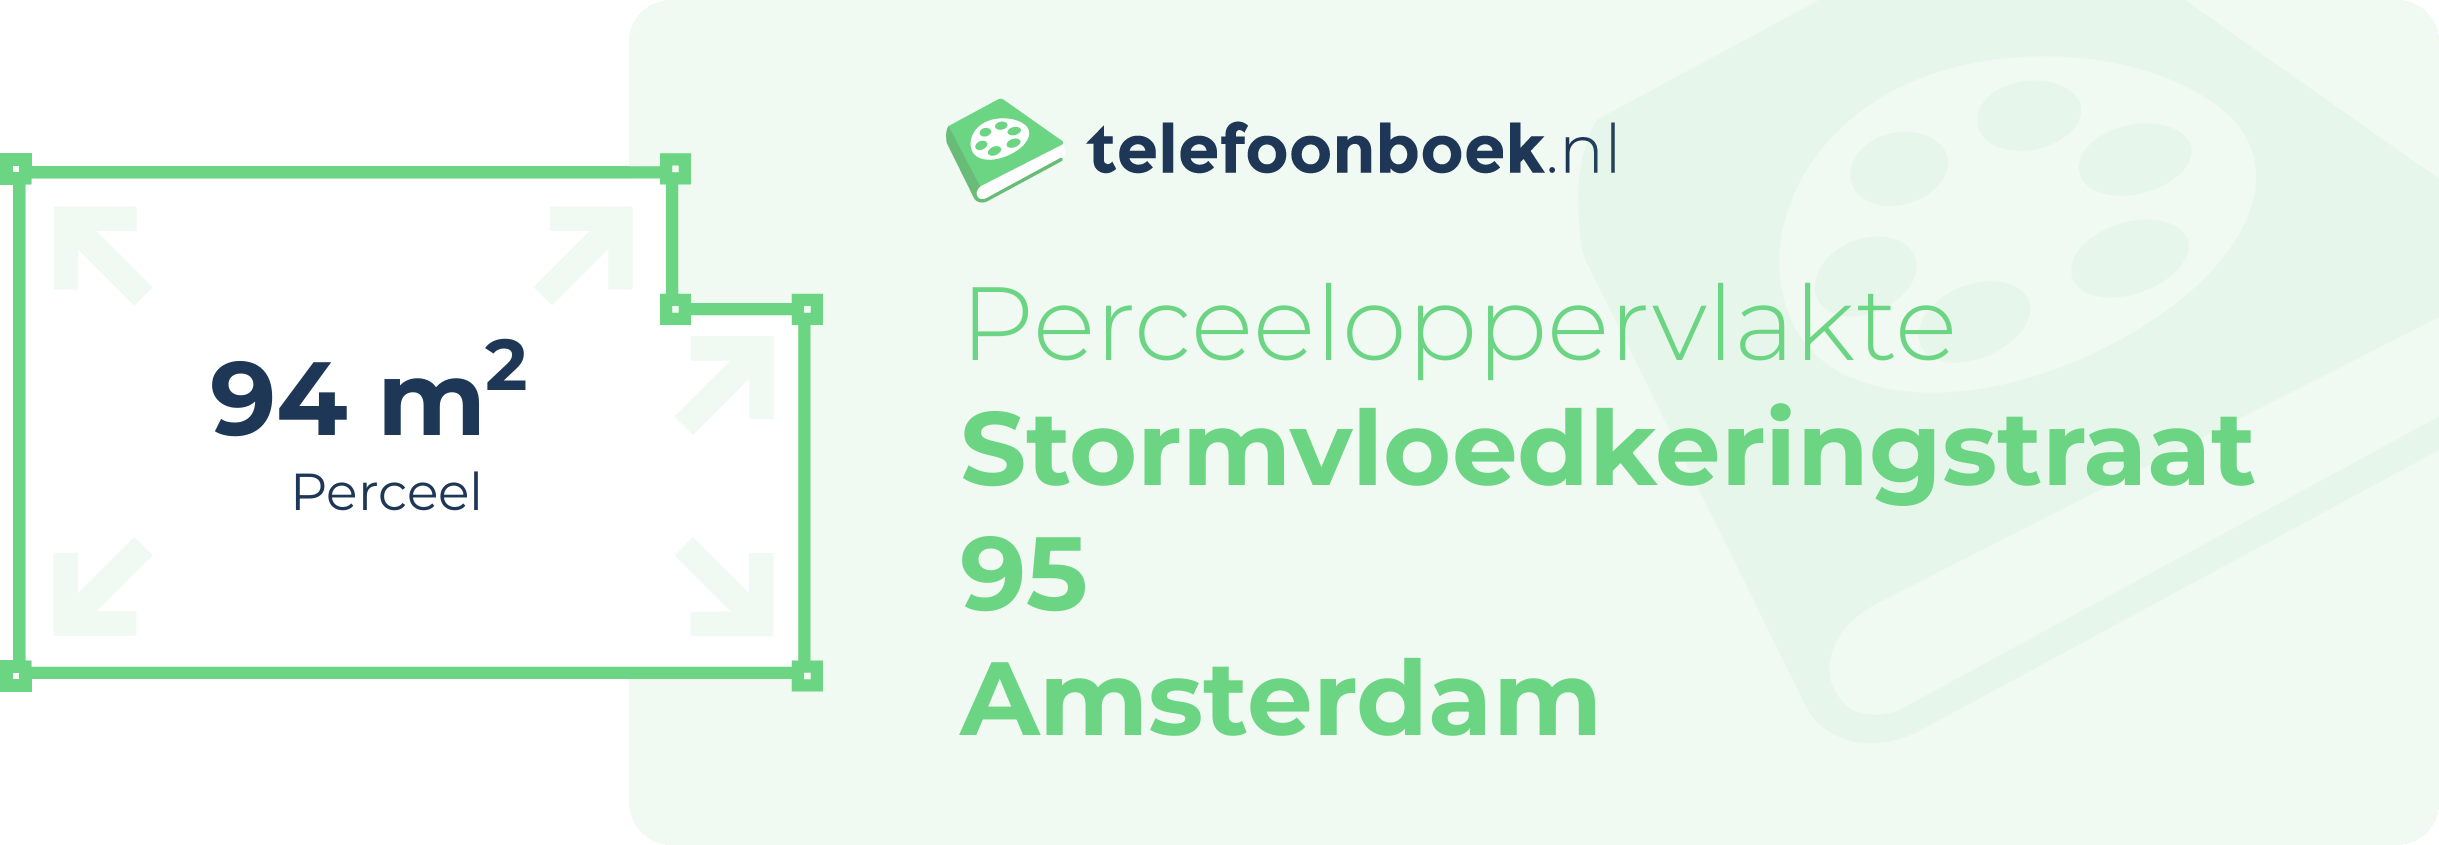 Perceeloppervlakte Stormvloedkeringstraat 95 Amsterdam